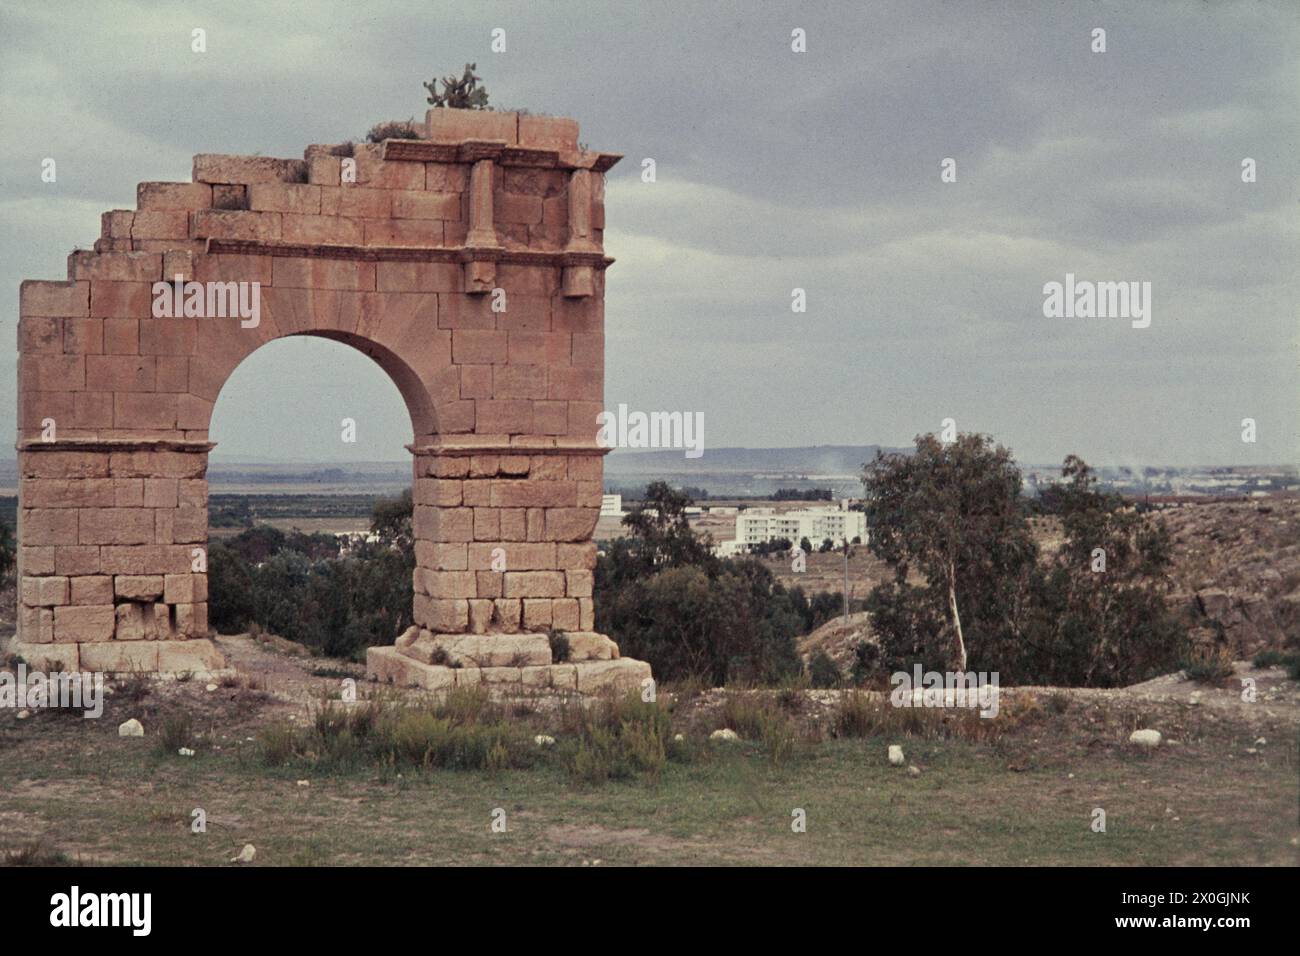 Ruines de l'arche triomphale de la ville romaine du cilium dans le Kasserine d'aujourd'hui. [traduction automatique] Banque D'Images